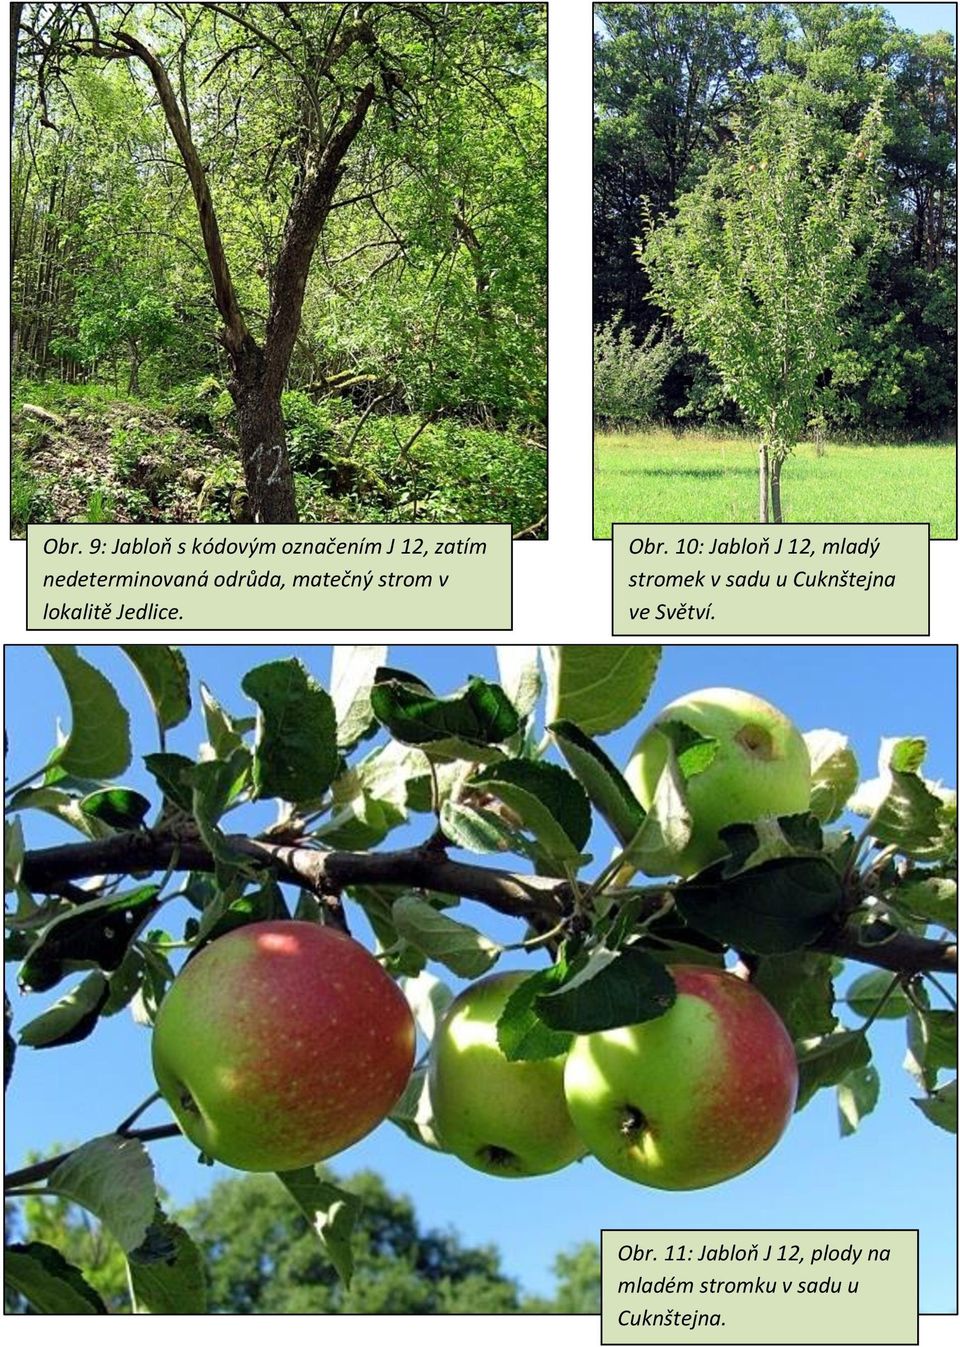 Obr. 10: Jabloň J 12, mladý stromek v sadu u Cuknštejna ve